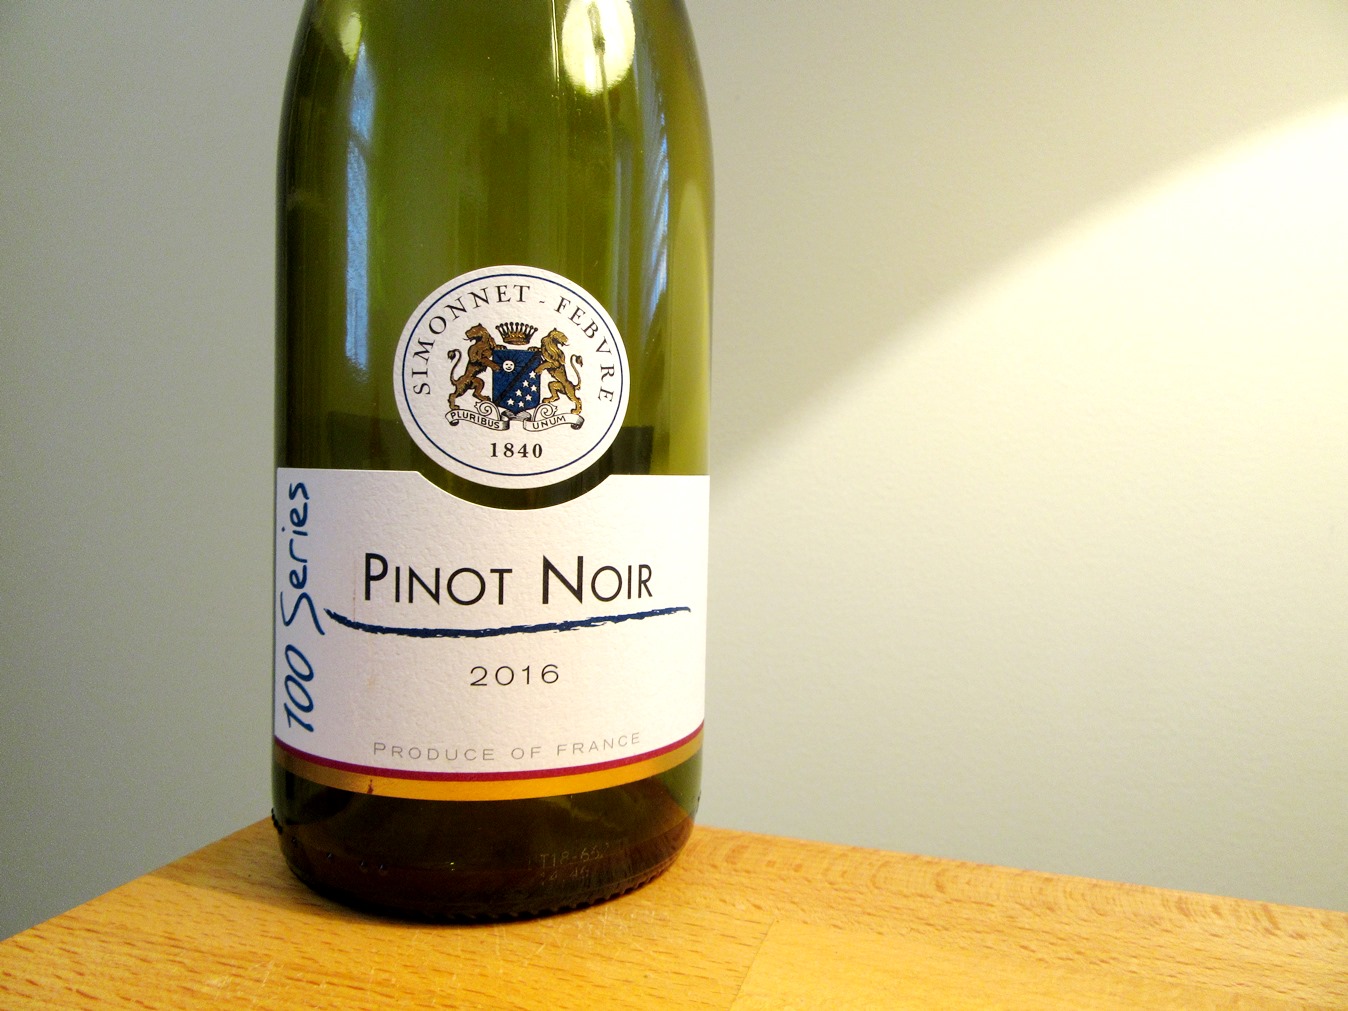 Simonnet-Febvre, 100 Series Pinot Noir 2016, France, Wine Casual